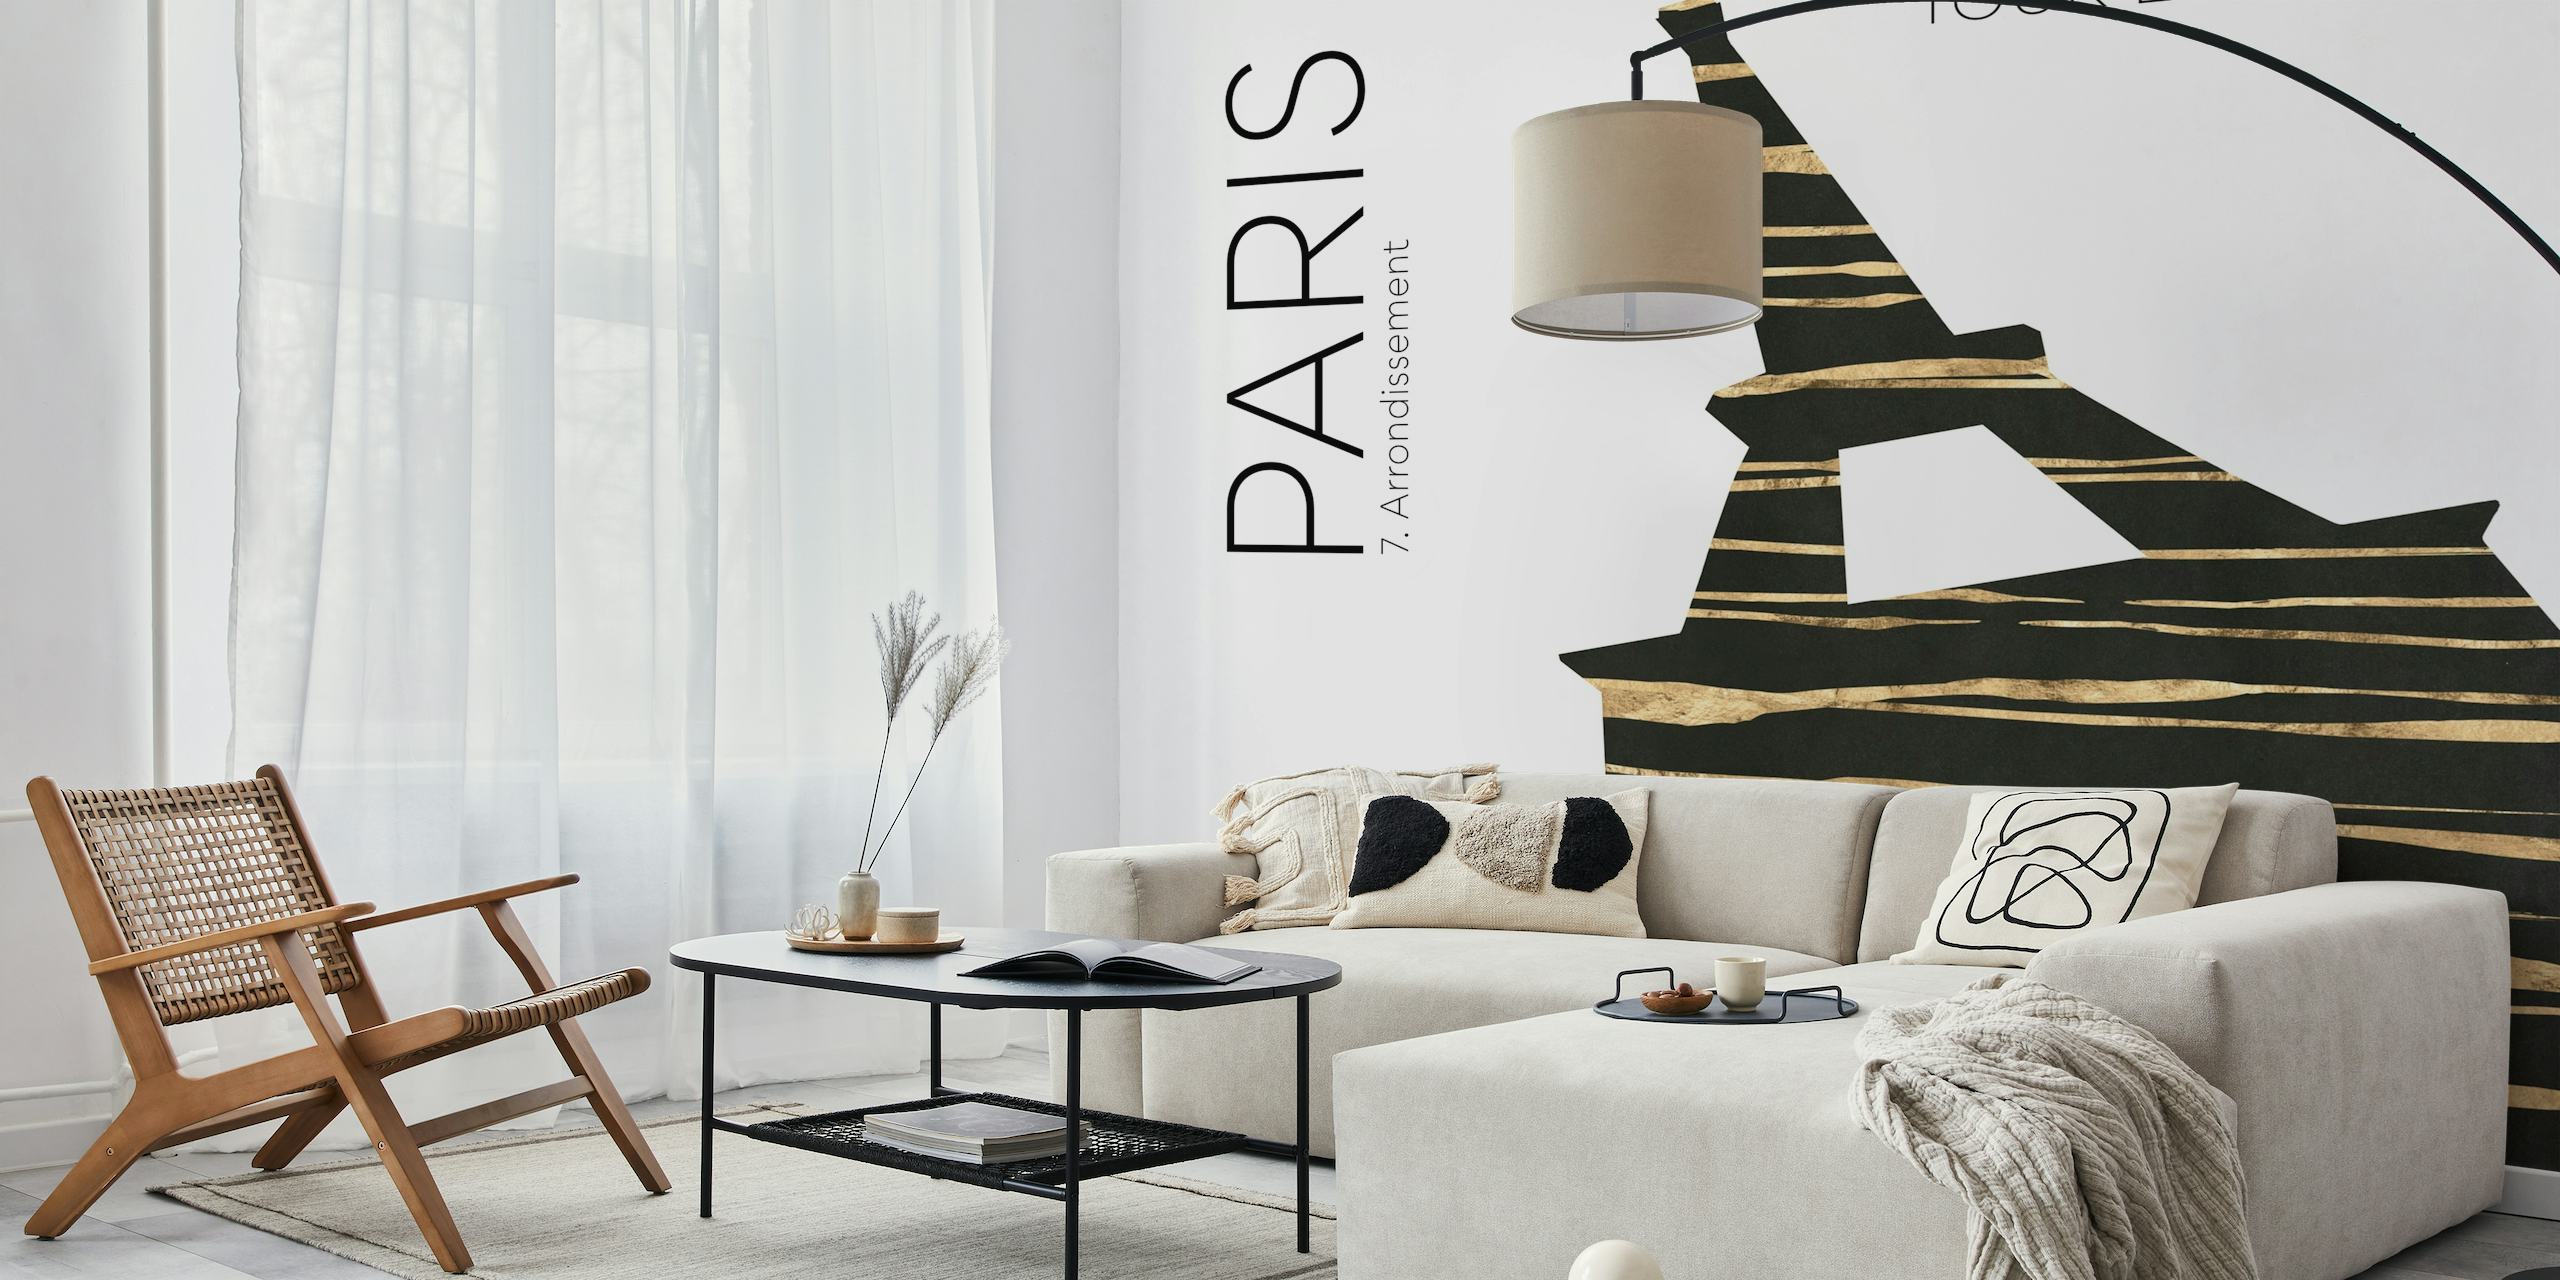 Carta da parati di arte urbana stilizzata della Torre Eiffel con texture astratte ed elementi ispirati a Parigi